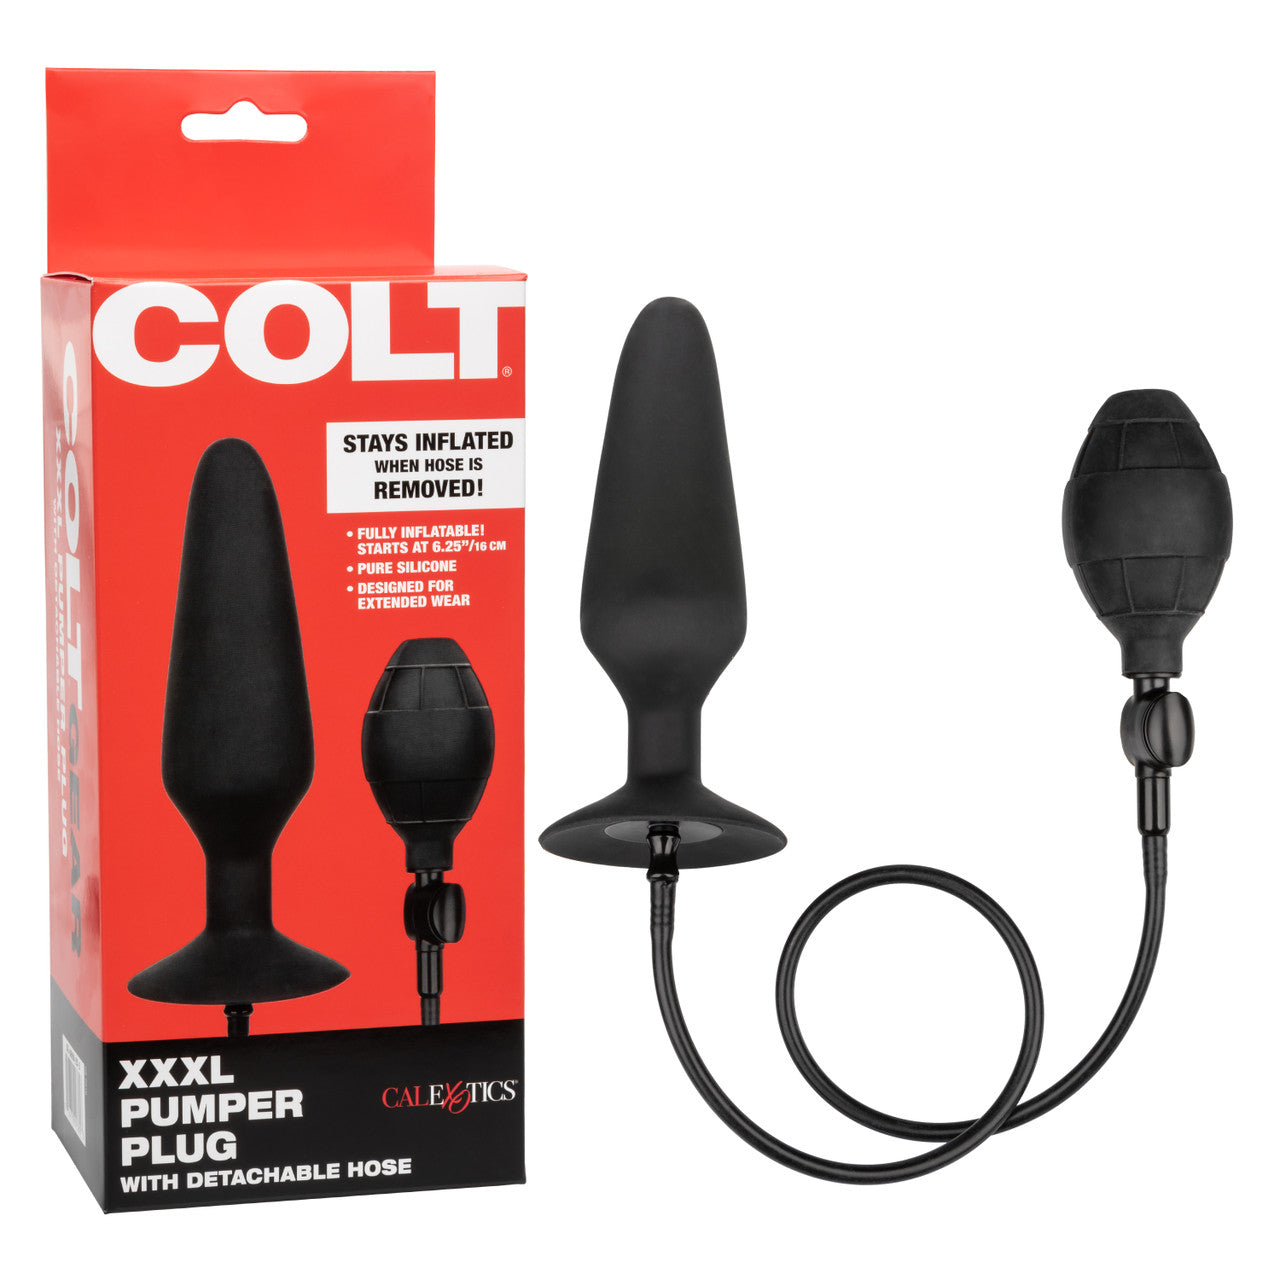 Colt XXXL Pumper Plug with Detachable Hose - Thorn & Feather